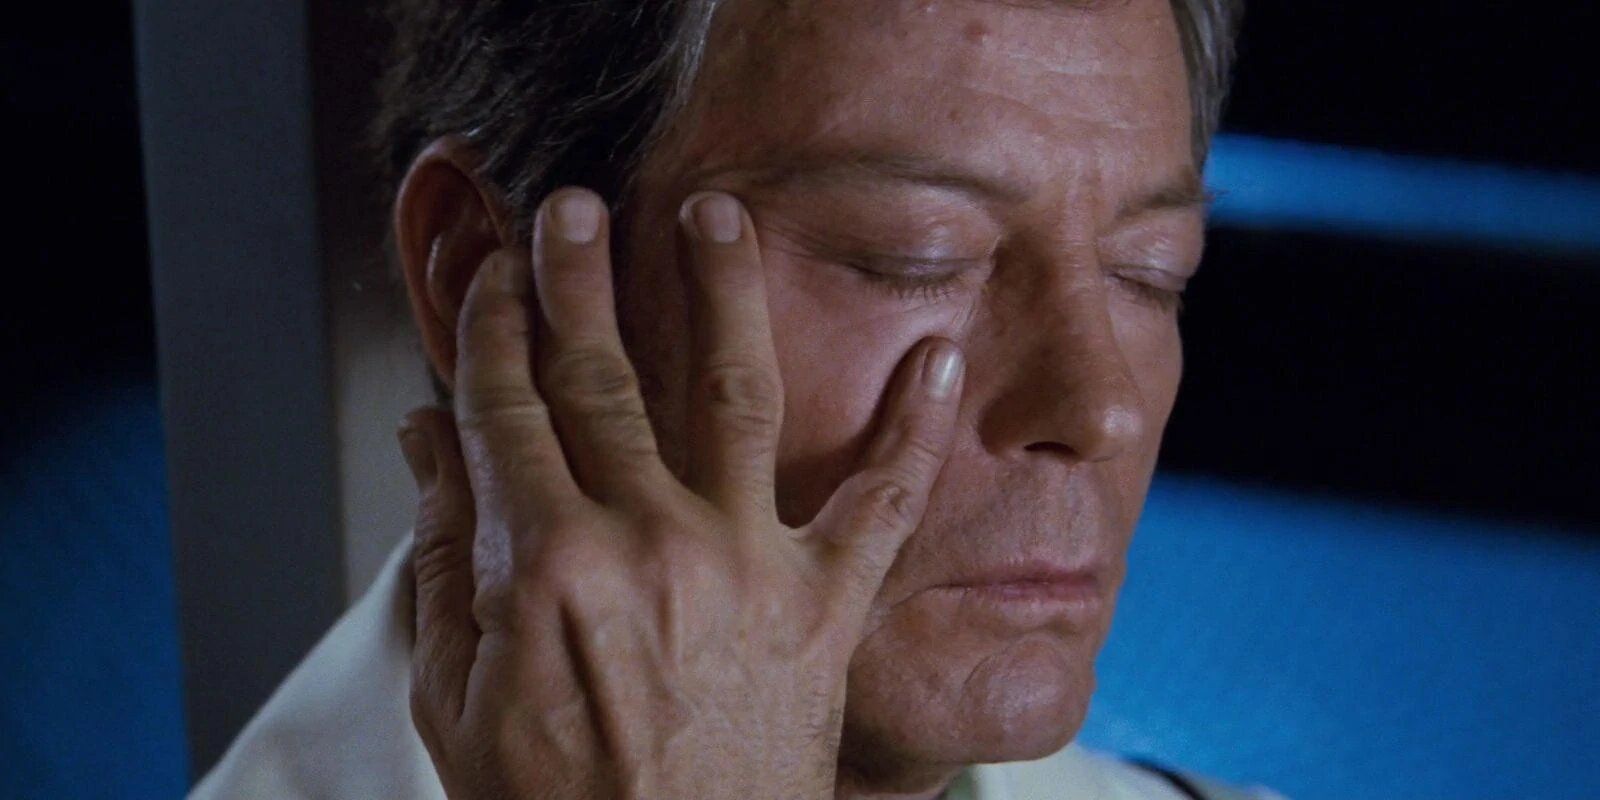 DeForest Kelley as McCoy in Star Trek